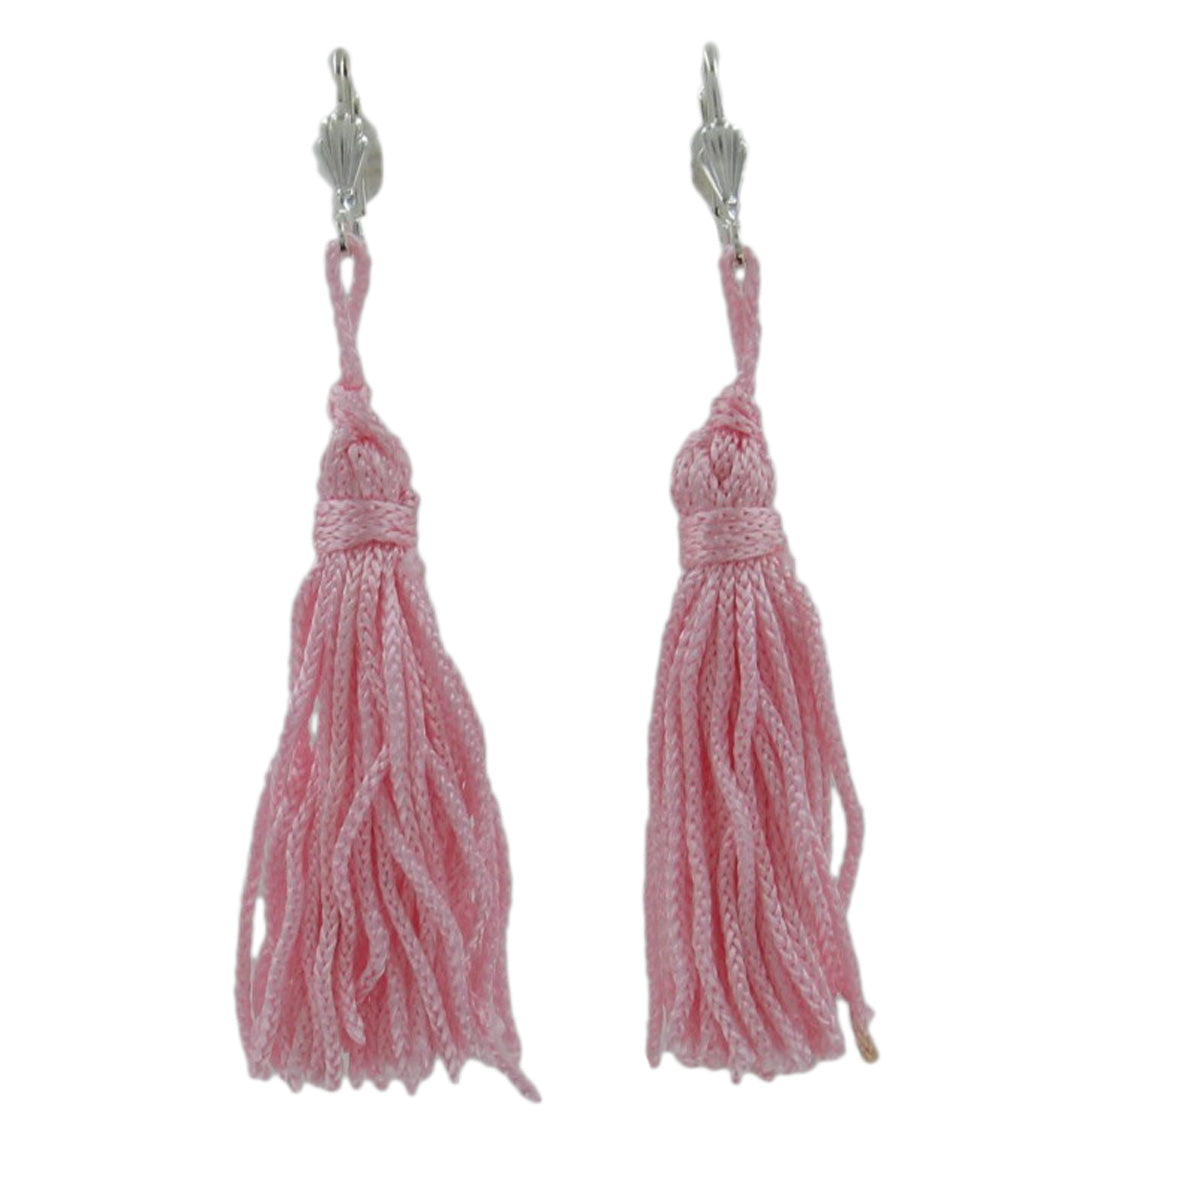 Light Pink Fringe Duster Tassel Dangle Earrings Pierced Silver Tone 3 1/4"